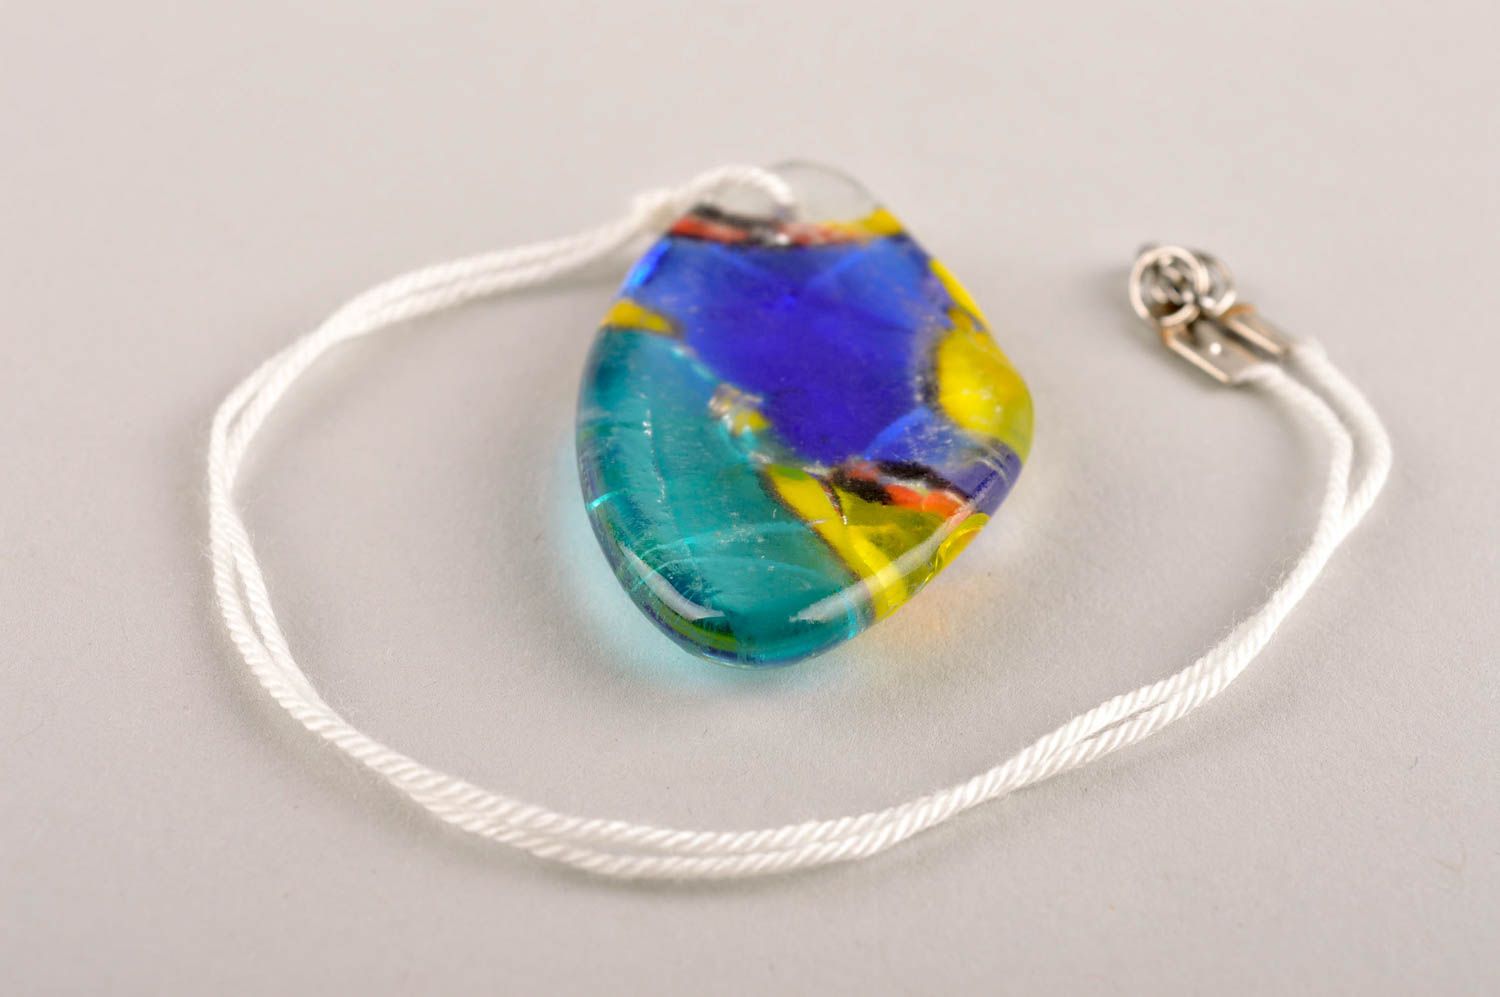 Handmade pendant designer pendant unusual gift for girl handmade glass pendant photo 3